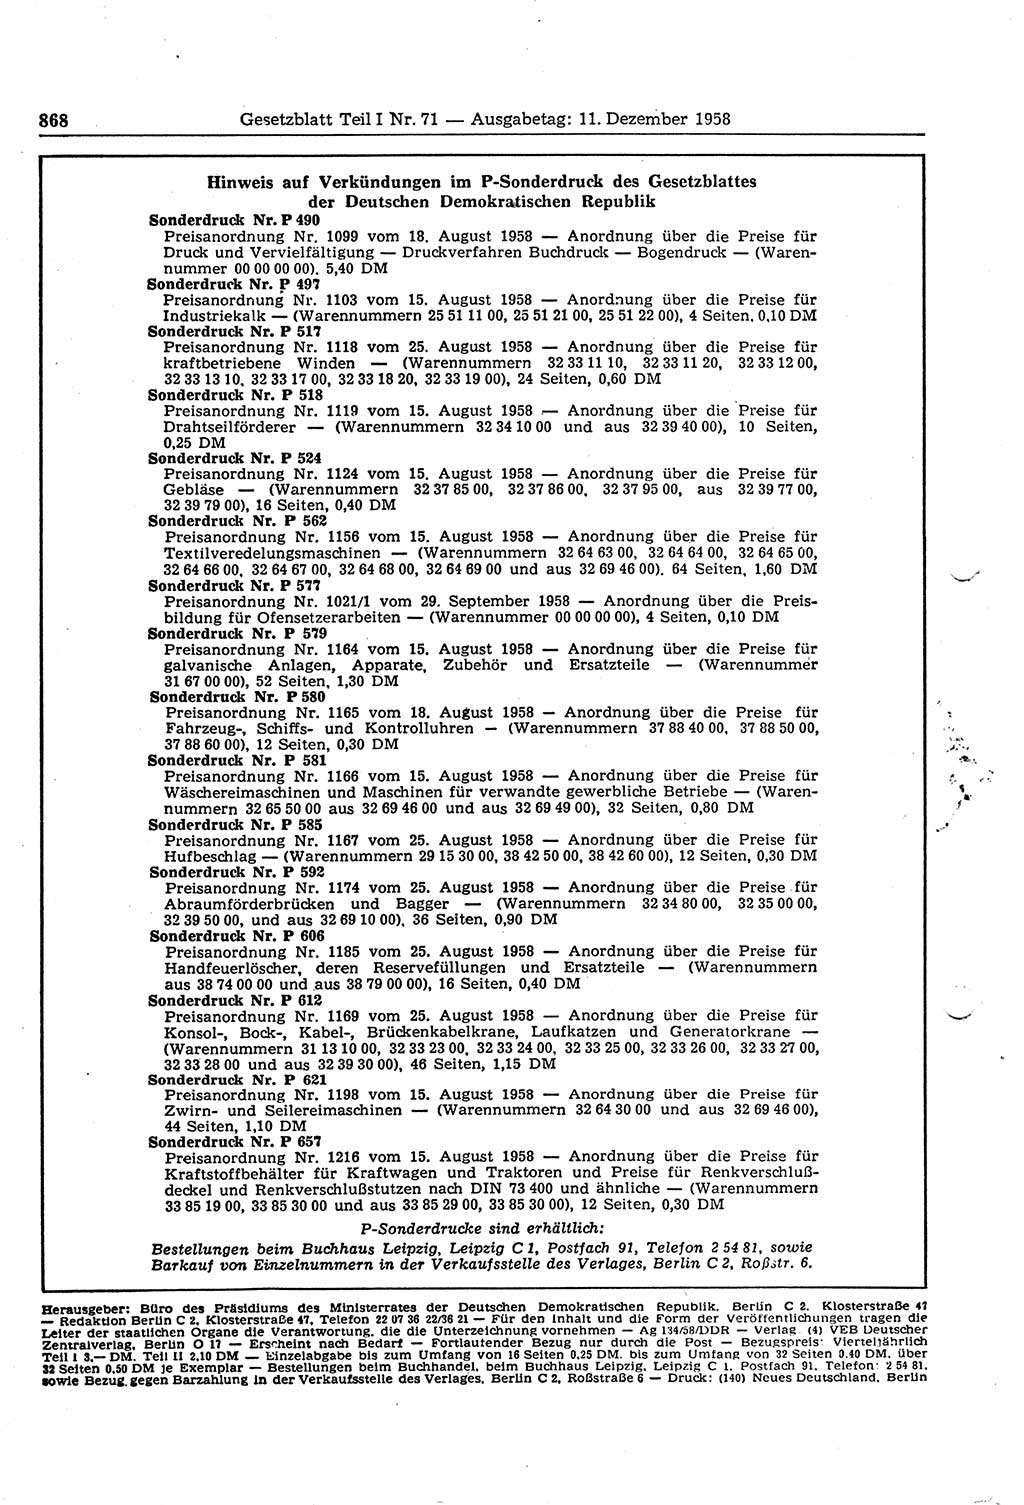 Gesetzblatt (GBl.) der Deutschen Demokratischen Republik (DDR) Teil Ⅰ 1958, Seite 868 (GBl. DDR Ⅰ 1958, S. 868)